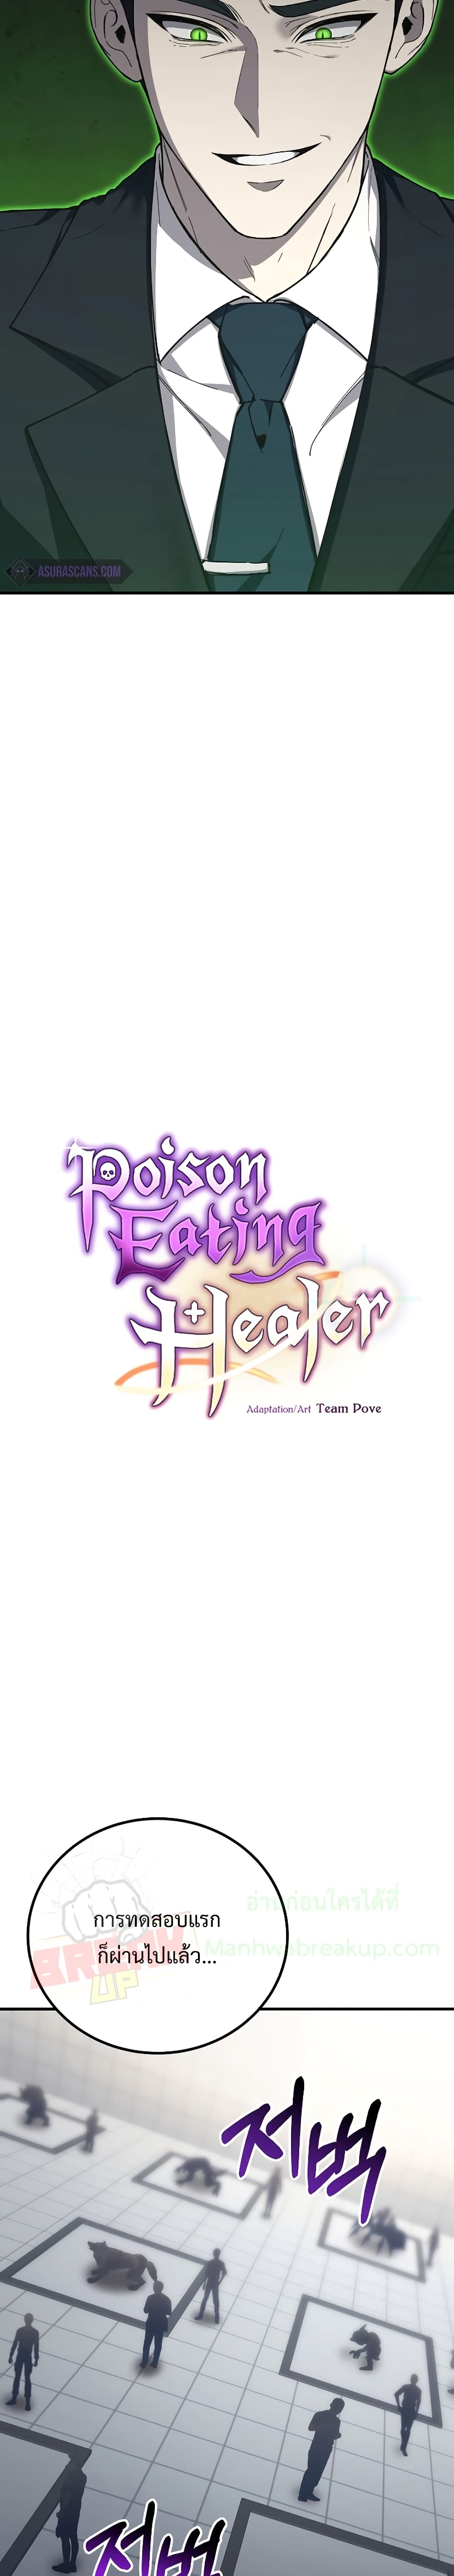 Poison-Eating Healer 25-25